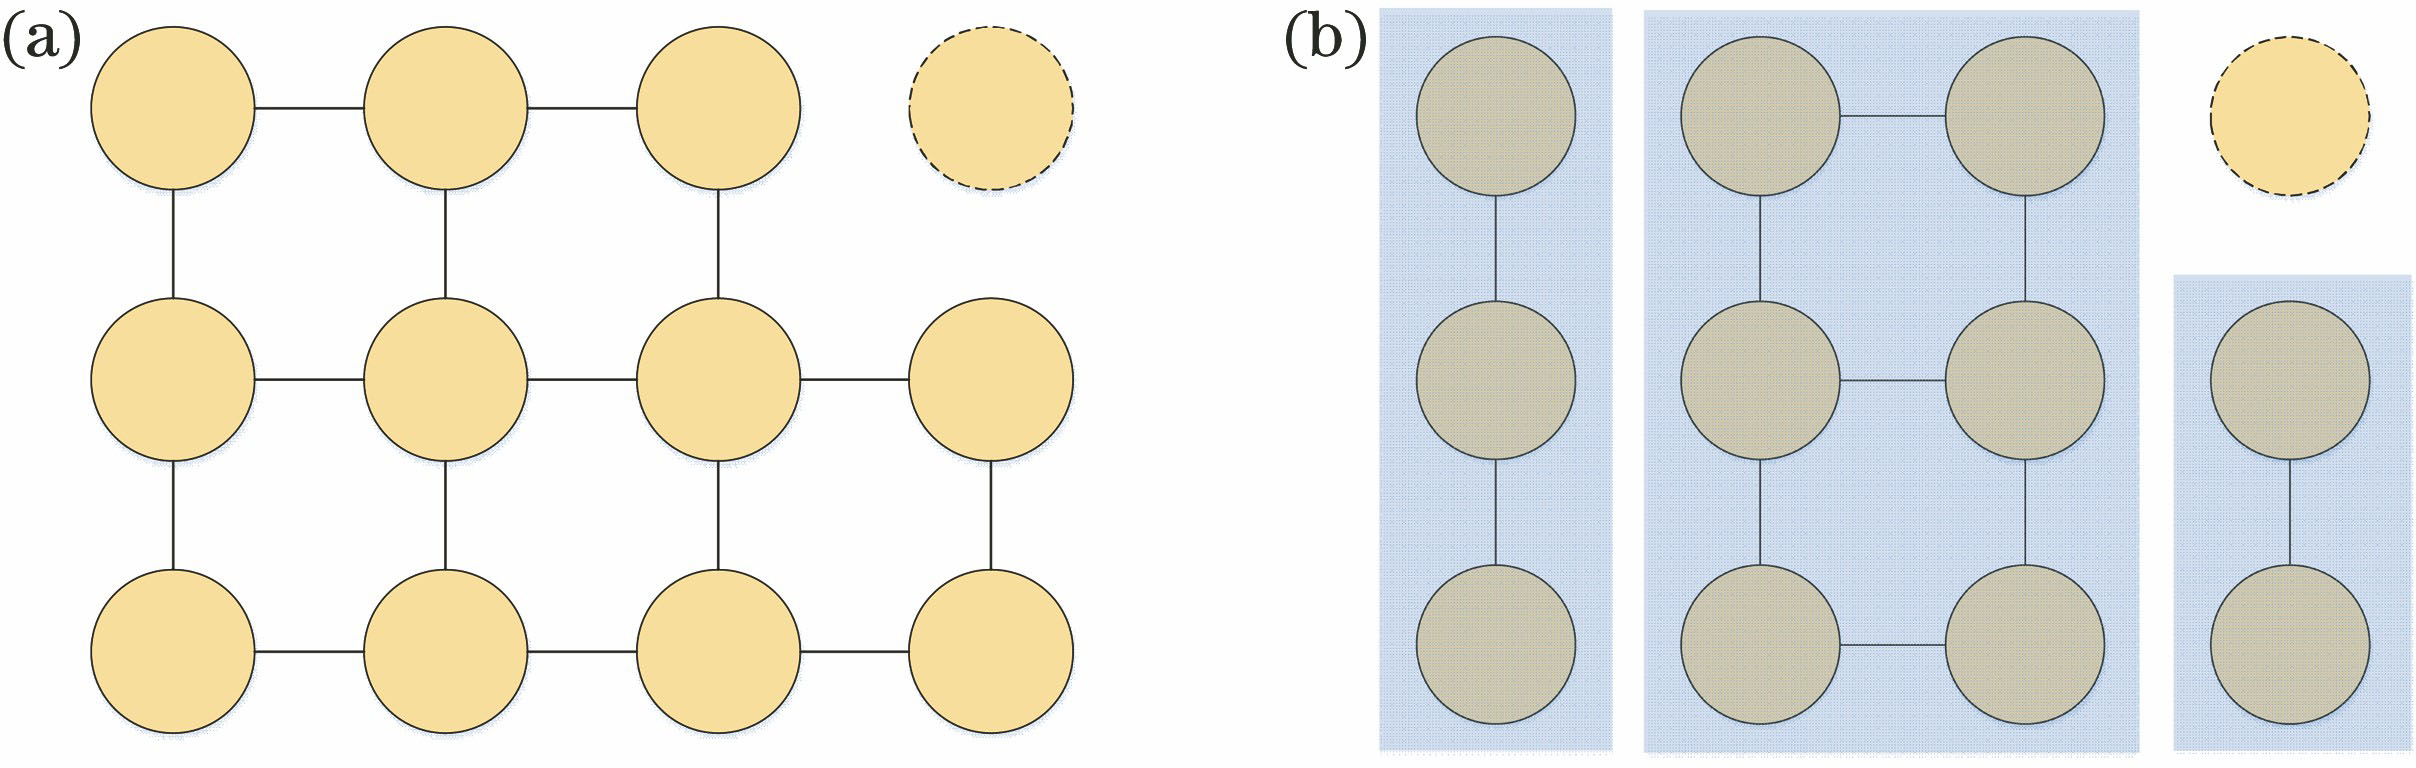 Group division diagram. (a) Connection establishment; (b) group division